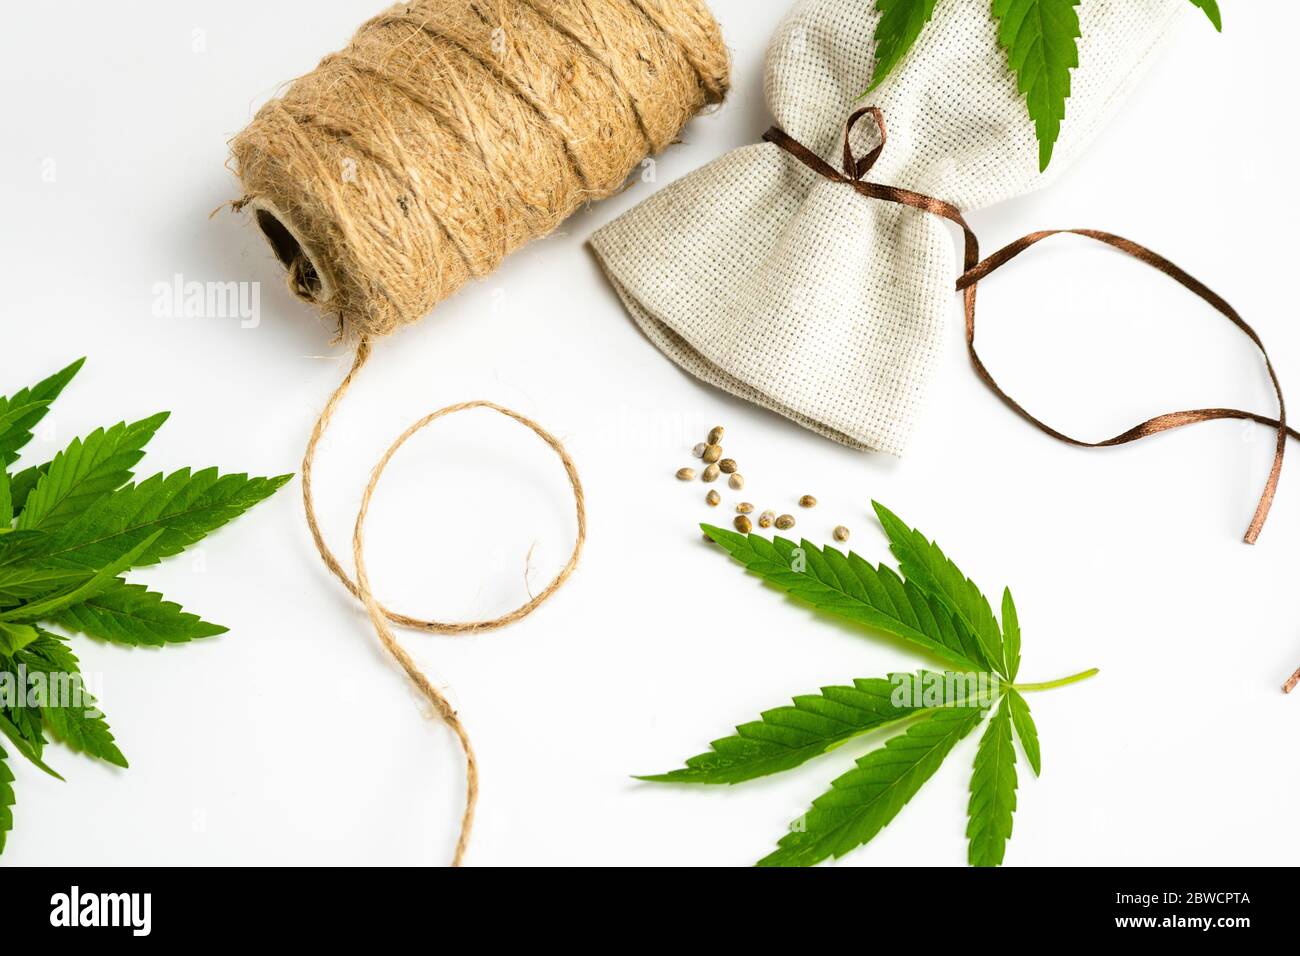 Hanffäden, medizinische Marihuana Blätter und Samen, Nahaufnahme.  Verwendung von Cannabis in der Stoffproduktion und in der Industrie  Stockfotografie - Alamy